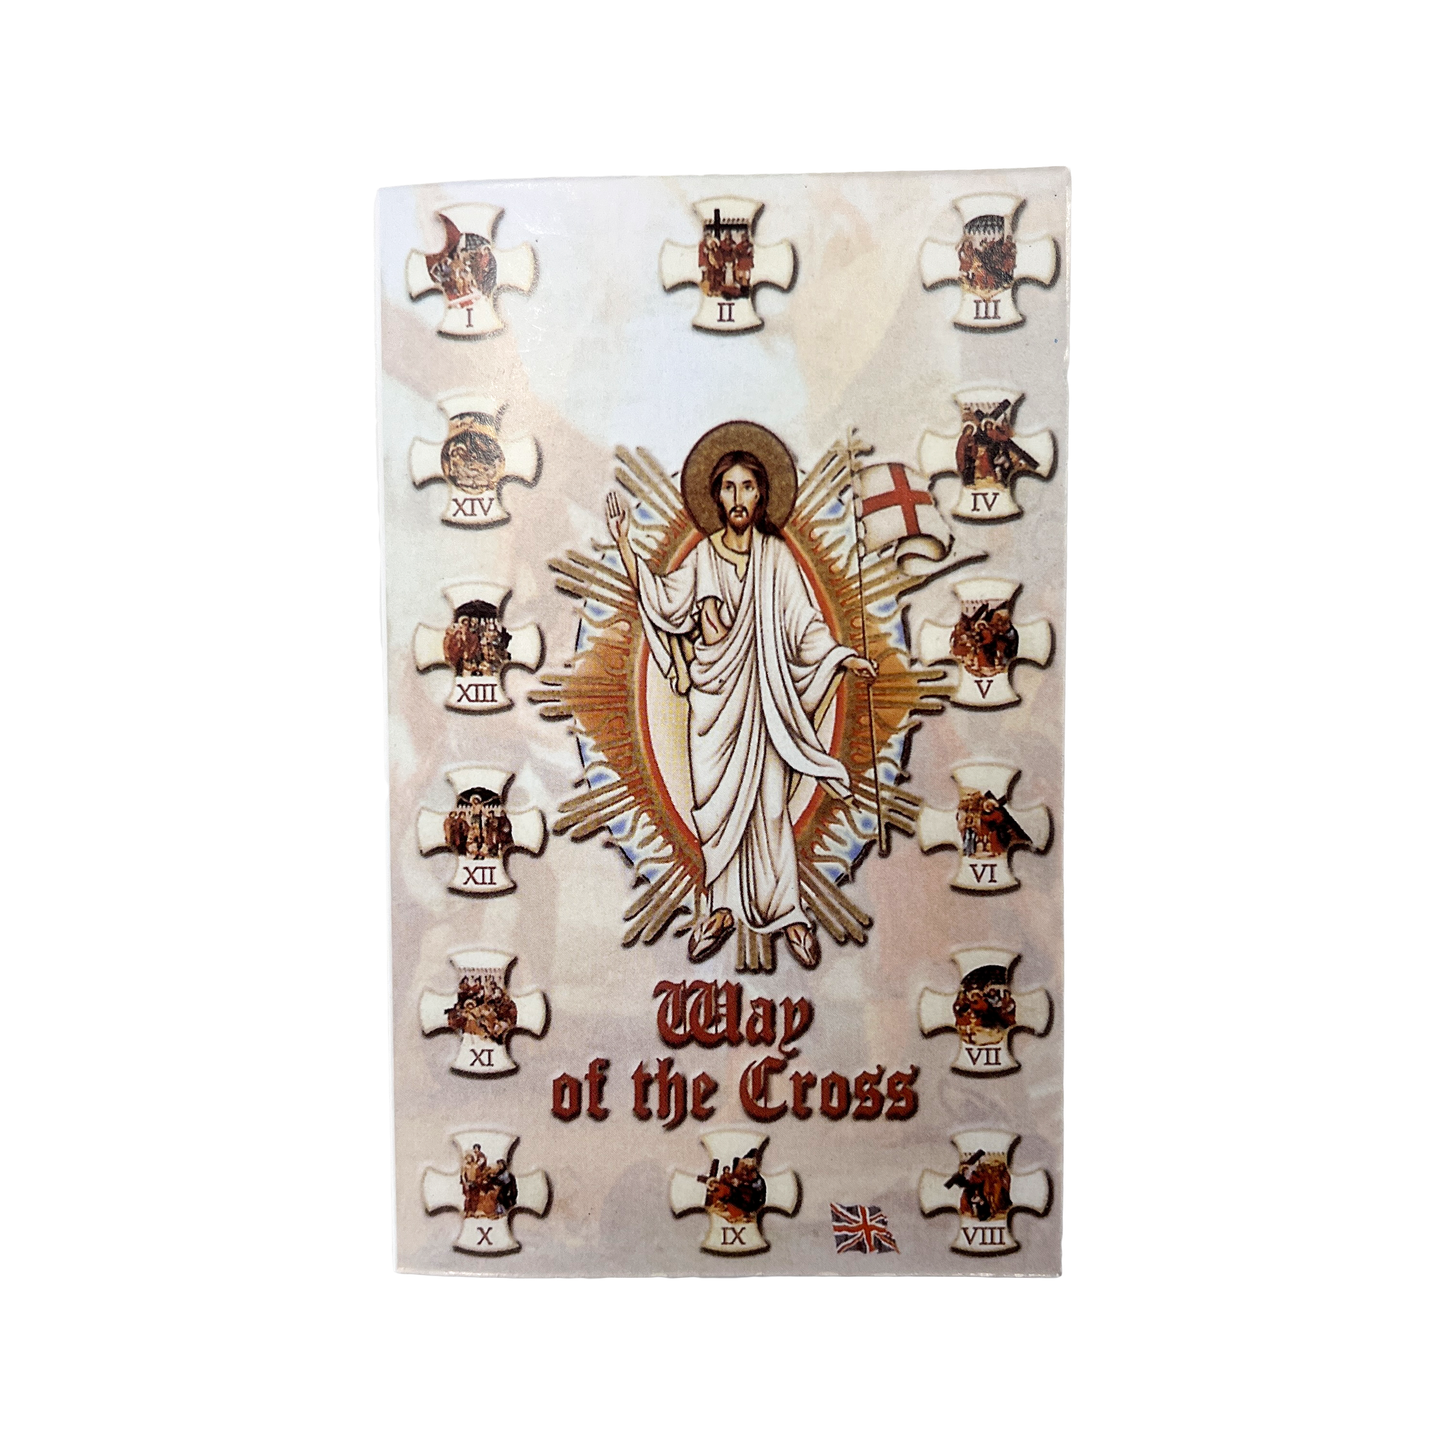 Estaciones de la cruz Crucifijo de madera con folleto